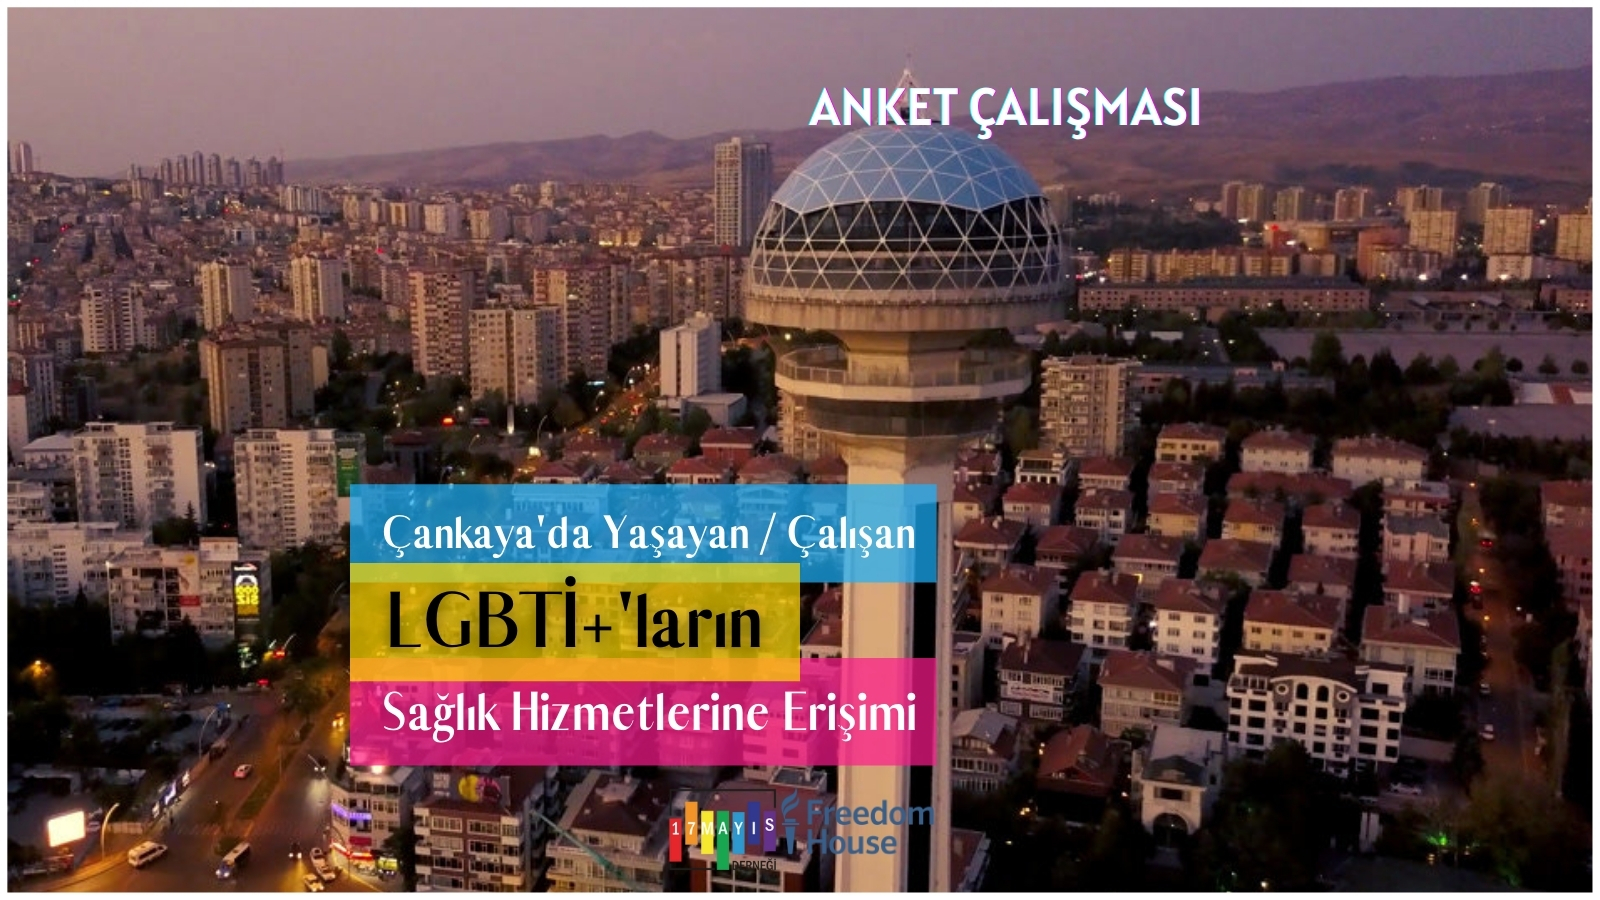 Anket Çalışması: Çankaya'da Yaşayan ya da Çalışan LGBTİ+'ların Sağlık Hizmetlerine Erişimi - 17 Mayıs